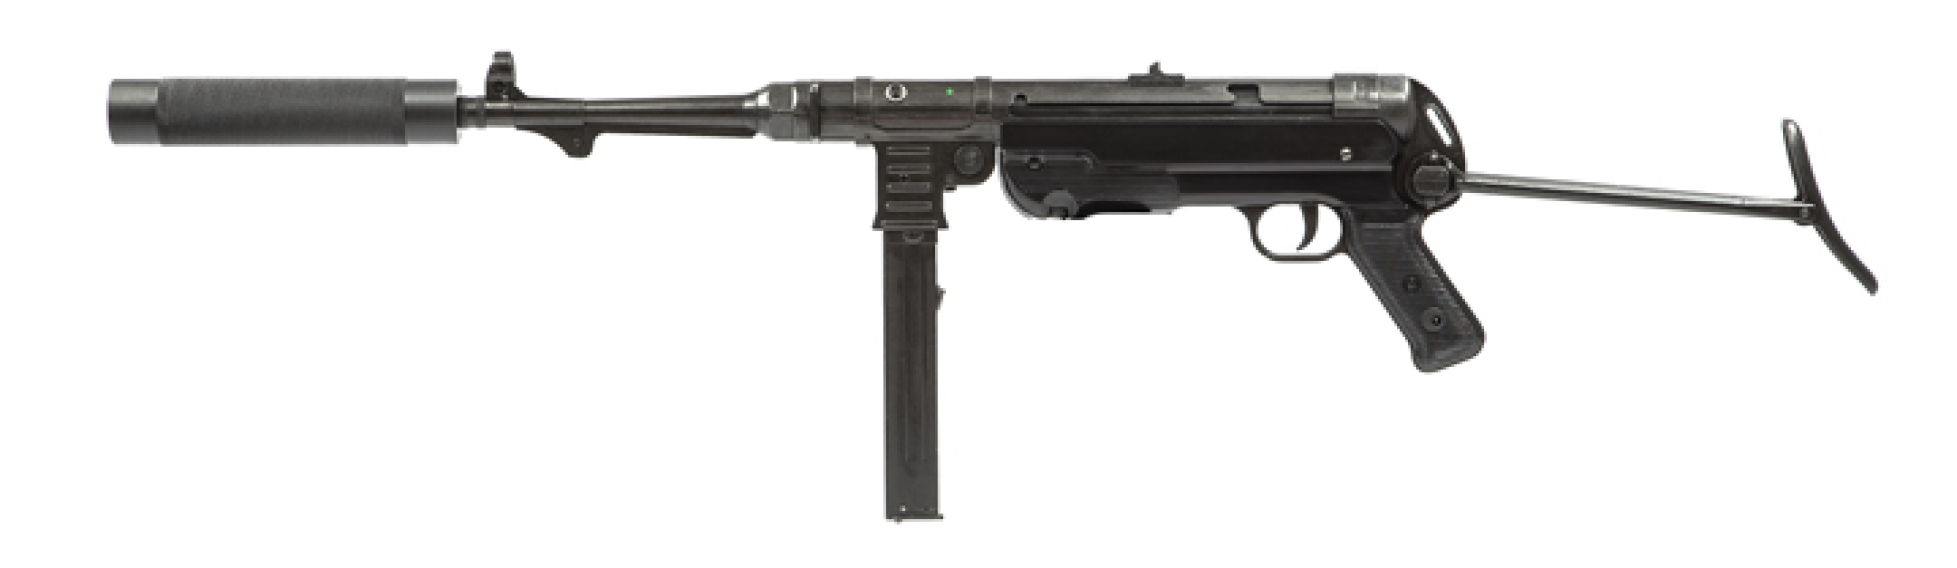 Пистолет-пулемет МП-40 «ШМАЙСЕР» серии «STEEL» 